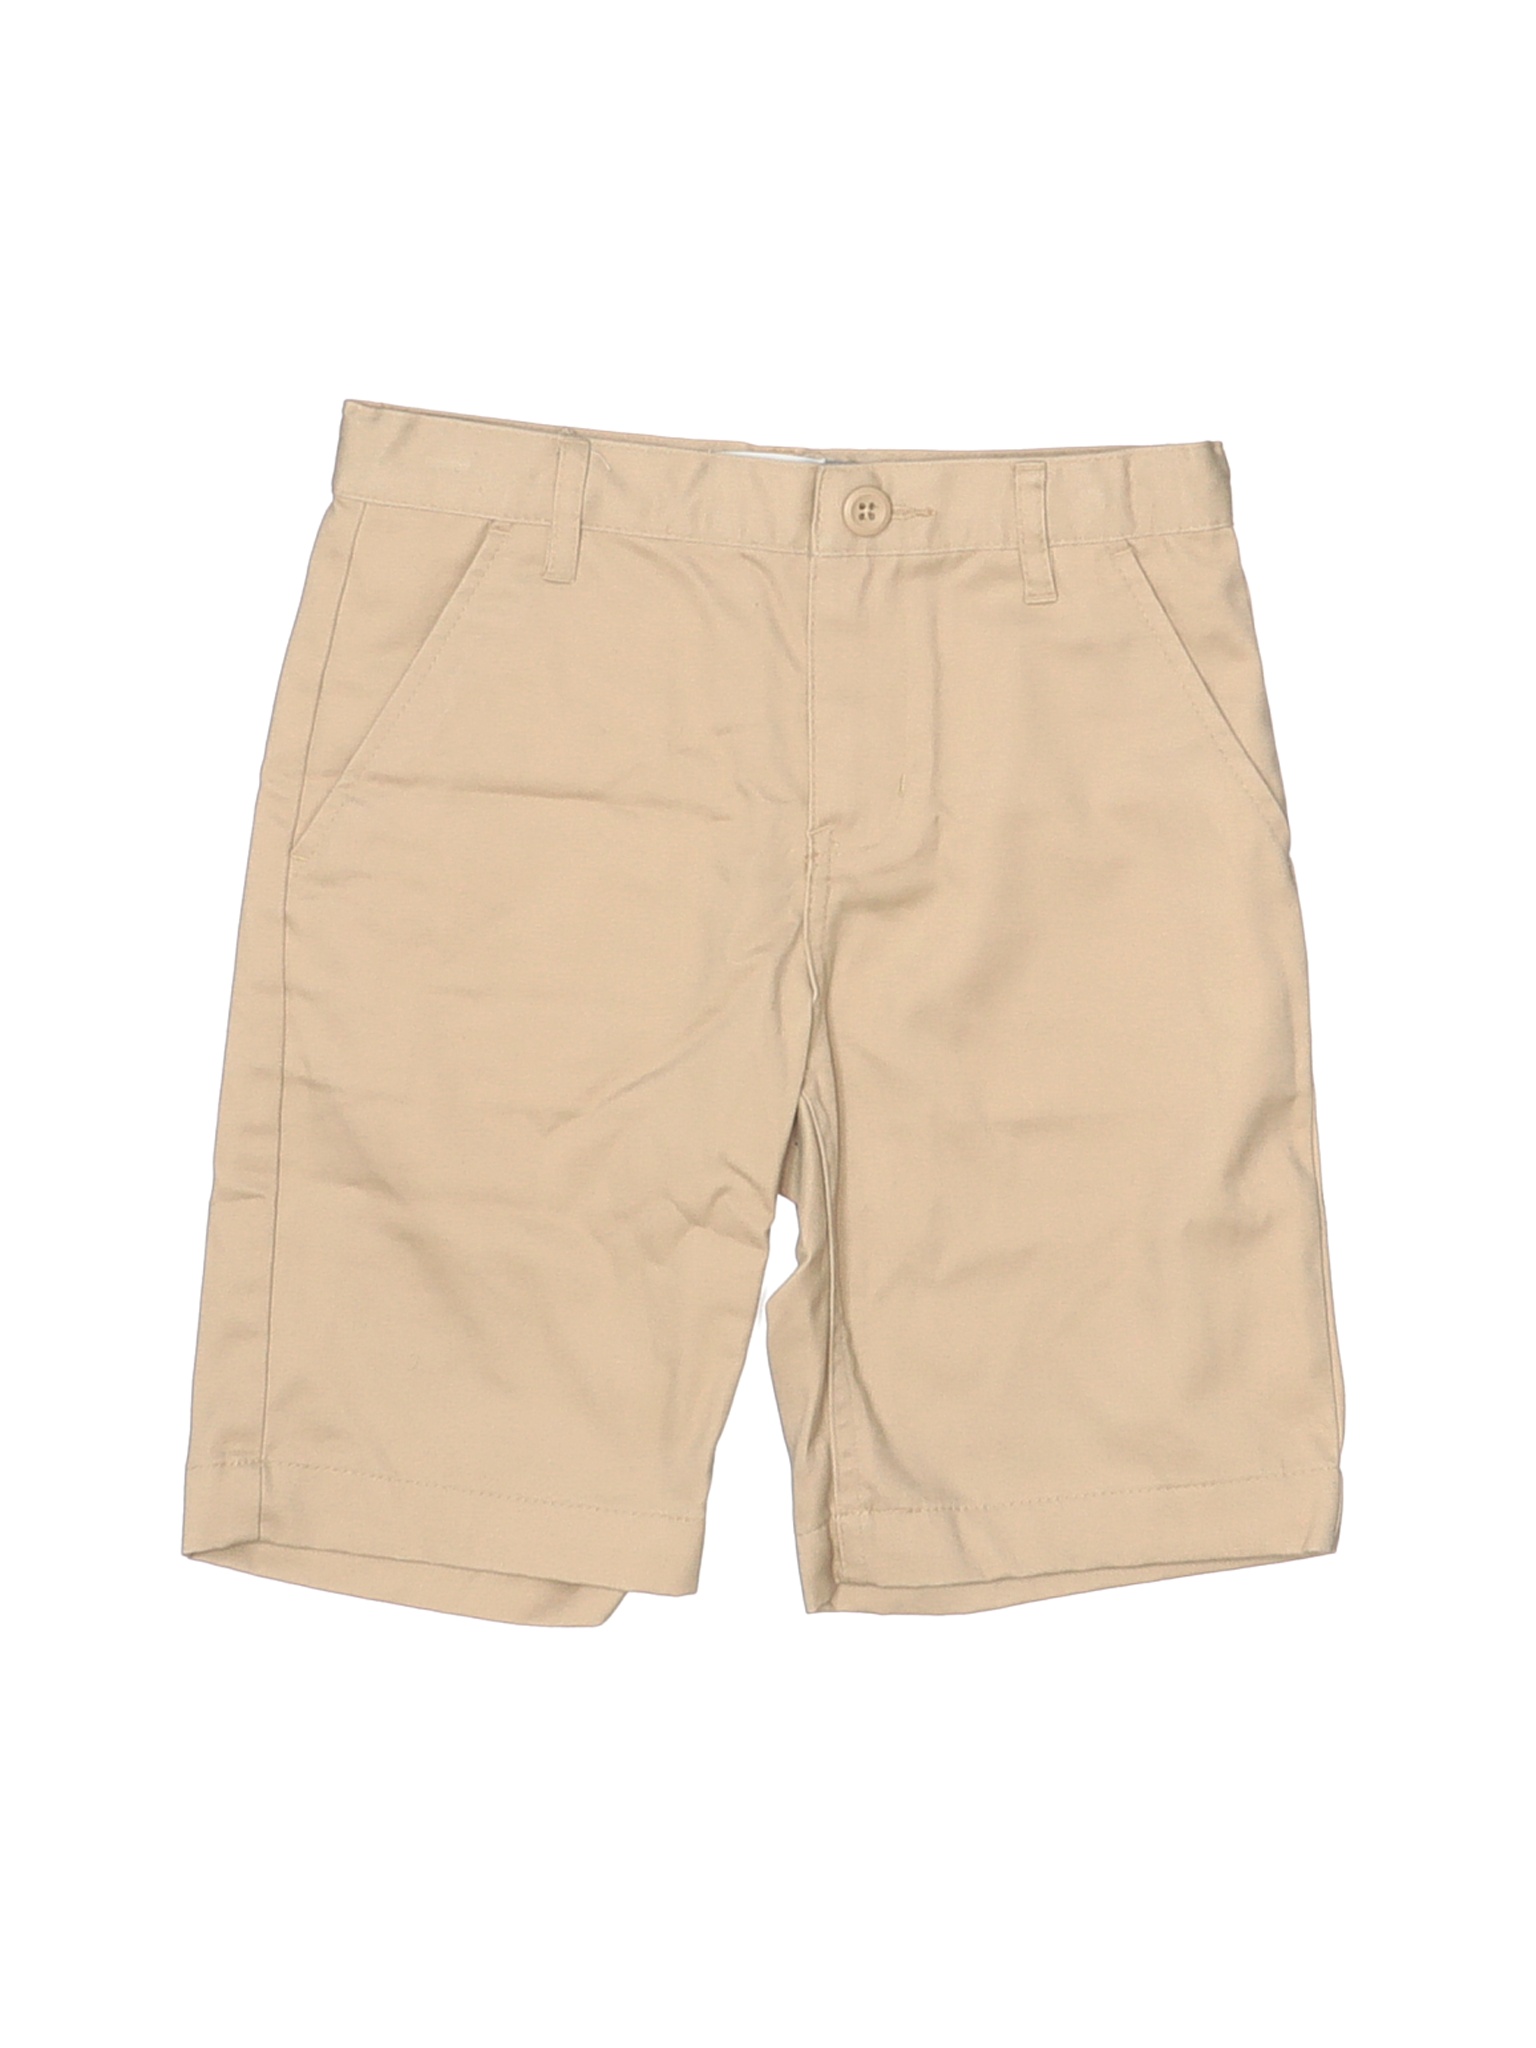 Old Navy Boys Brown Khaki Shorts 7 | eBay